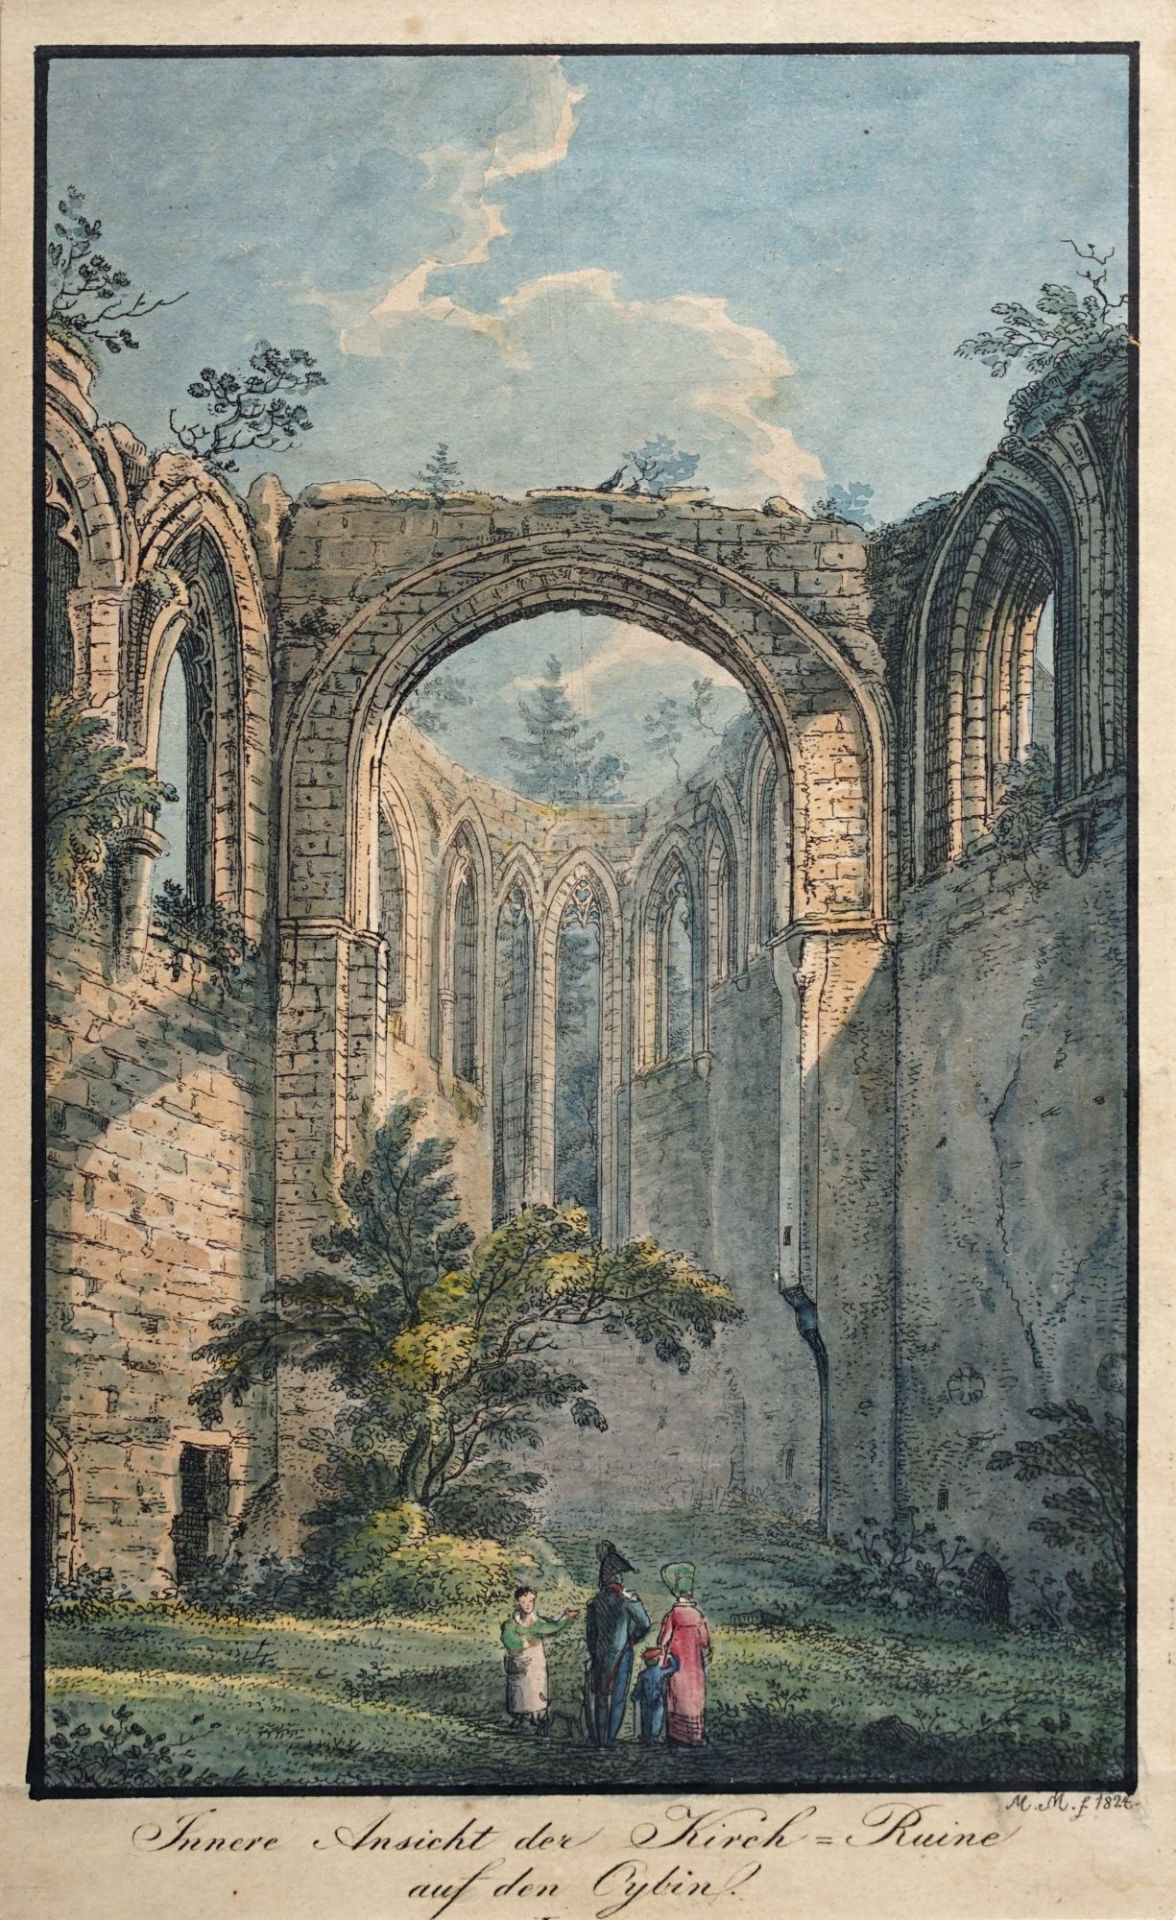 Karl Friedrich Moritz Müller "Innere Ansicht der Kirch=Ruine auf dem Oybin" 1824.